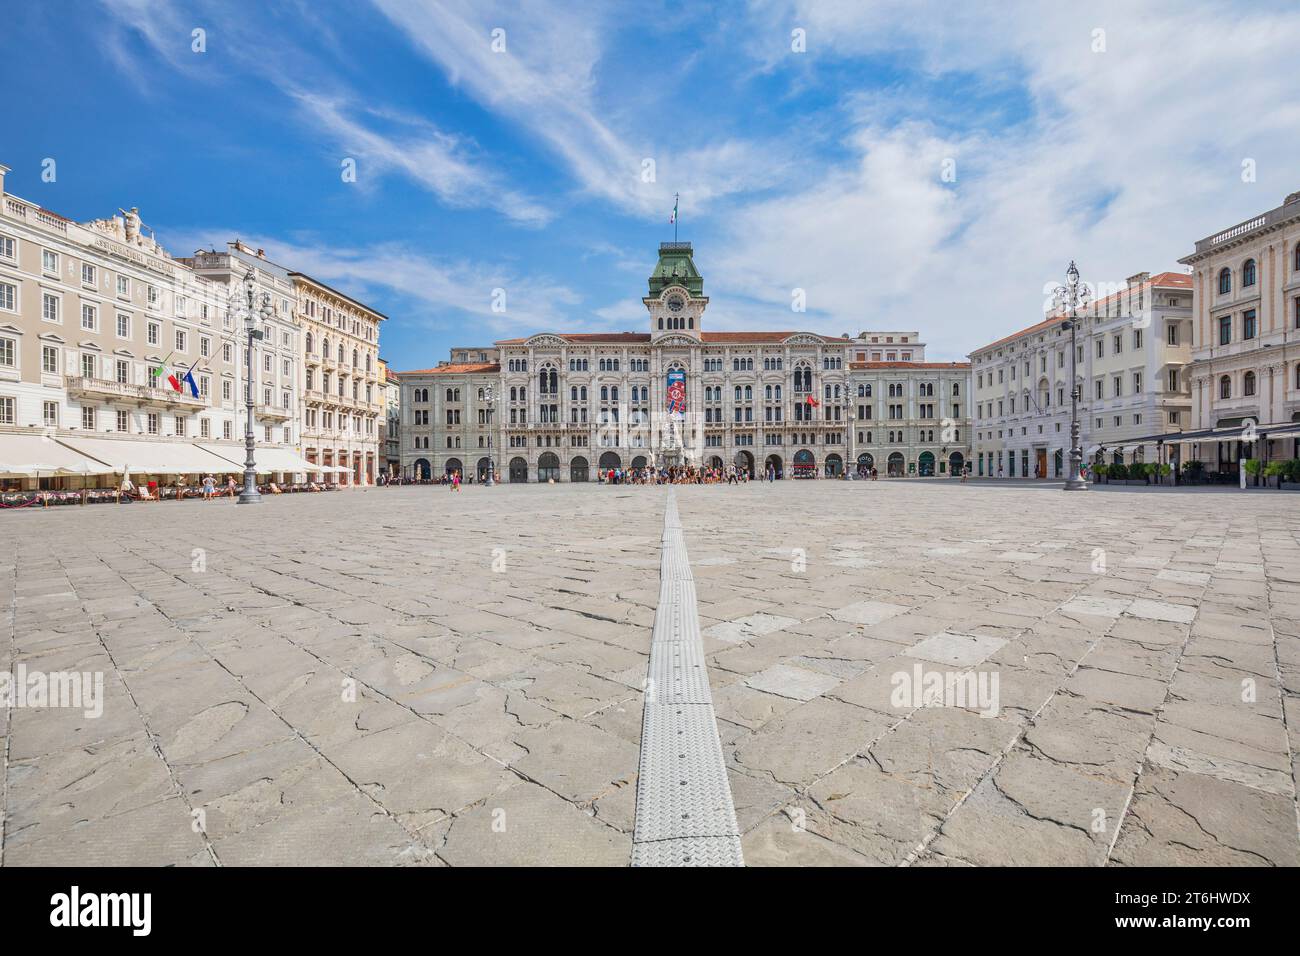 Italia, Friuli Venezia Giulia, Trieste, Piazza Unità d'Italia, la piazza principale di Trieste Foto Stock